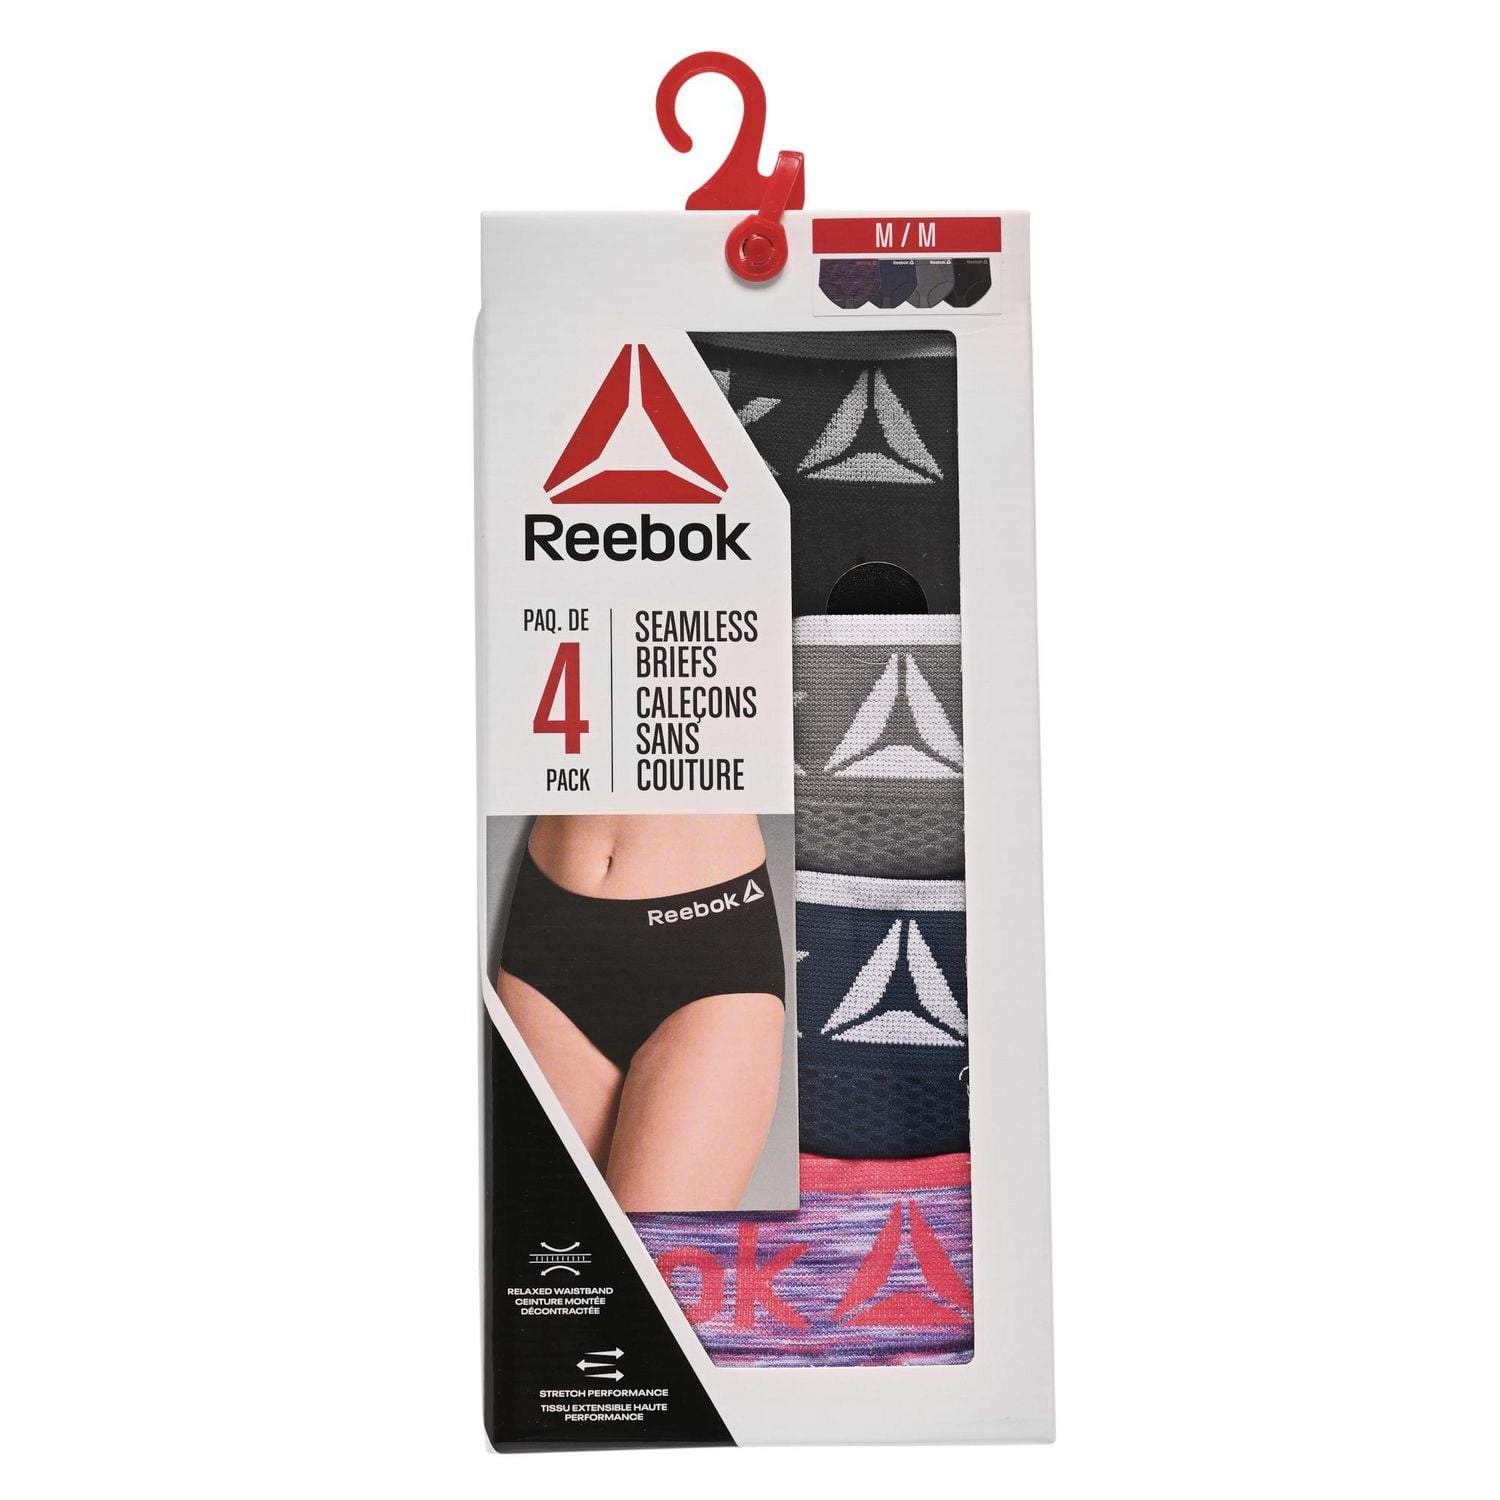 Reebok Women?s Underwear ? Seamless High Waist Brief Panties (4 Pack), Size  Large, Rose Dust/Sharkskin/Black/Natural